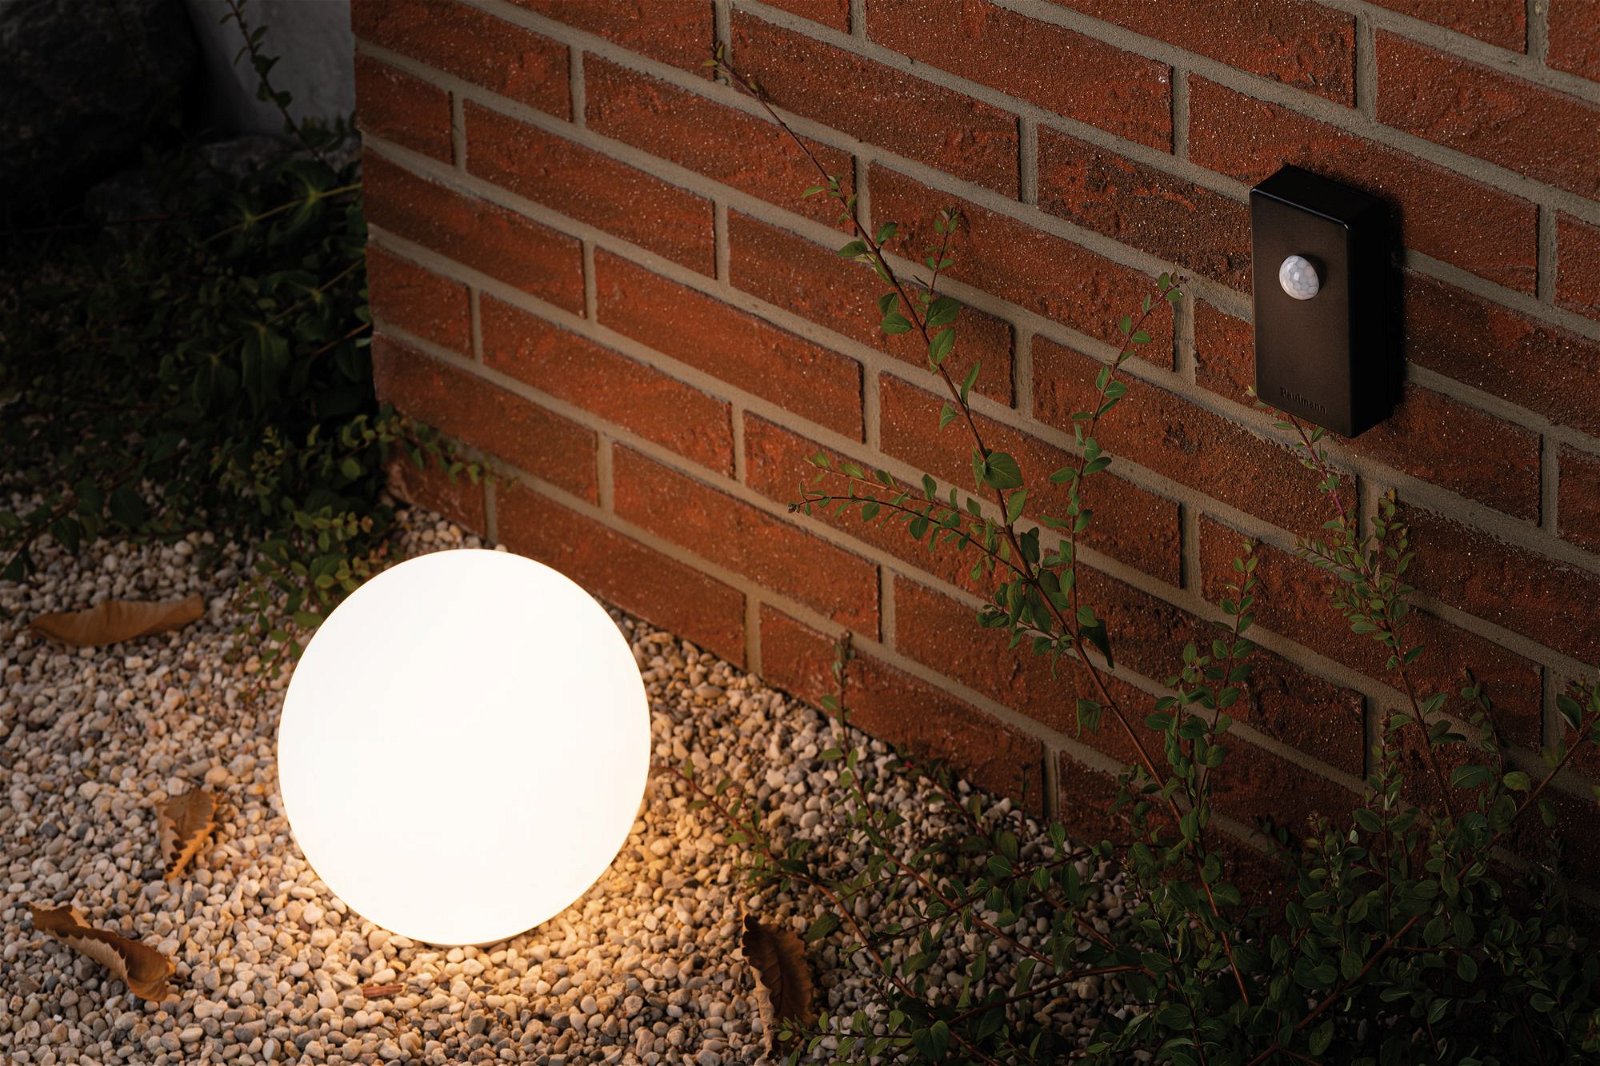 Plug & Shine Sensor Smart Home Zigbee Twilight schemersensor 4,8V Antraciet